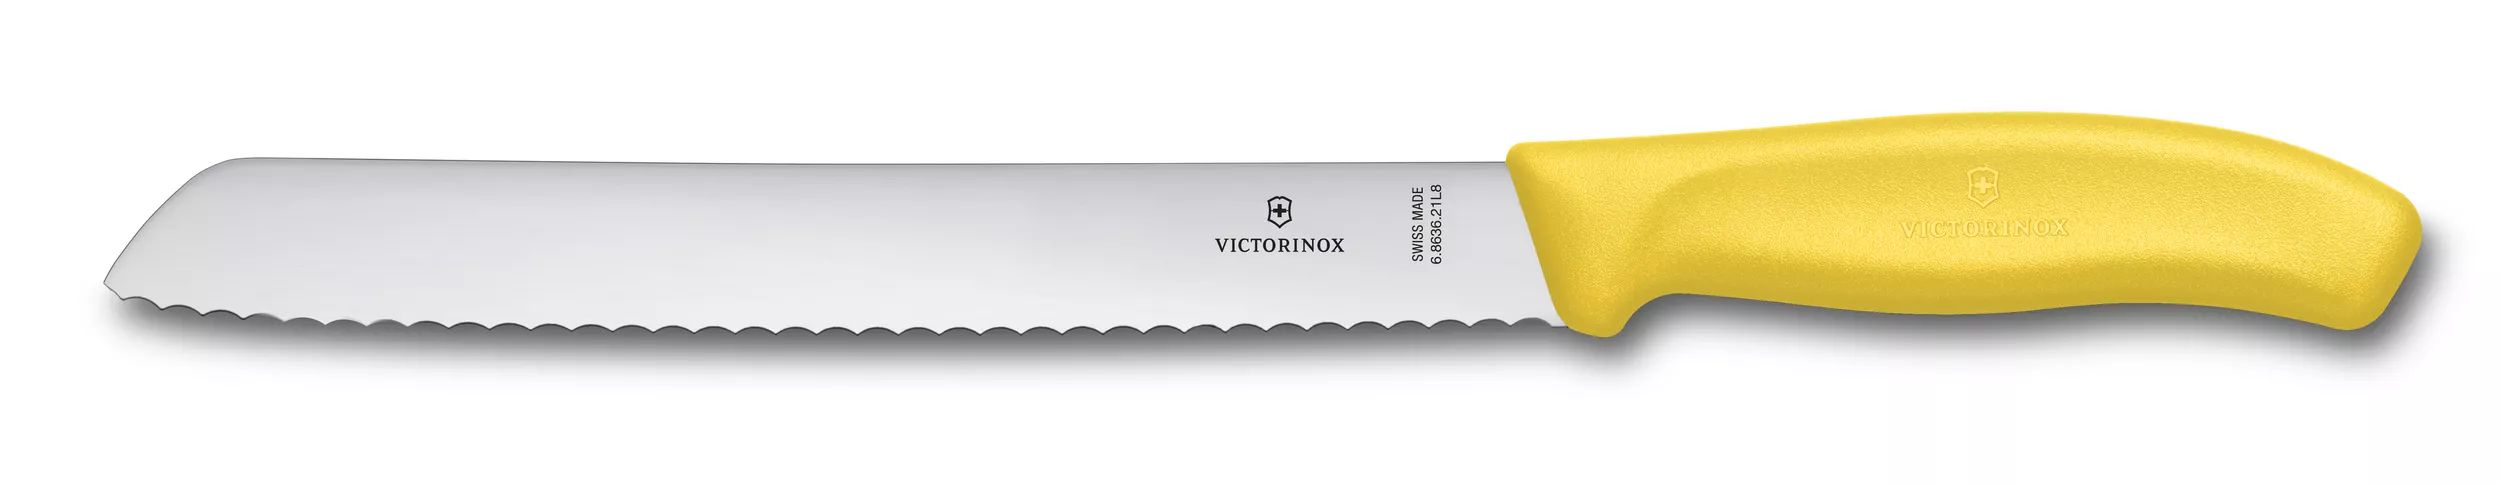 Swiss Classic Bread Knife-6.8636.21L8B